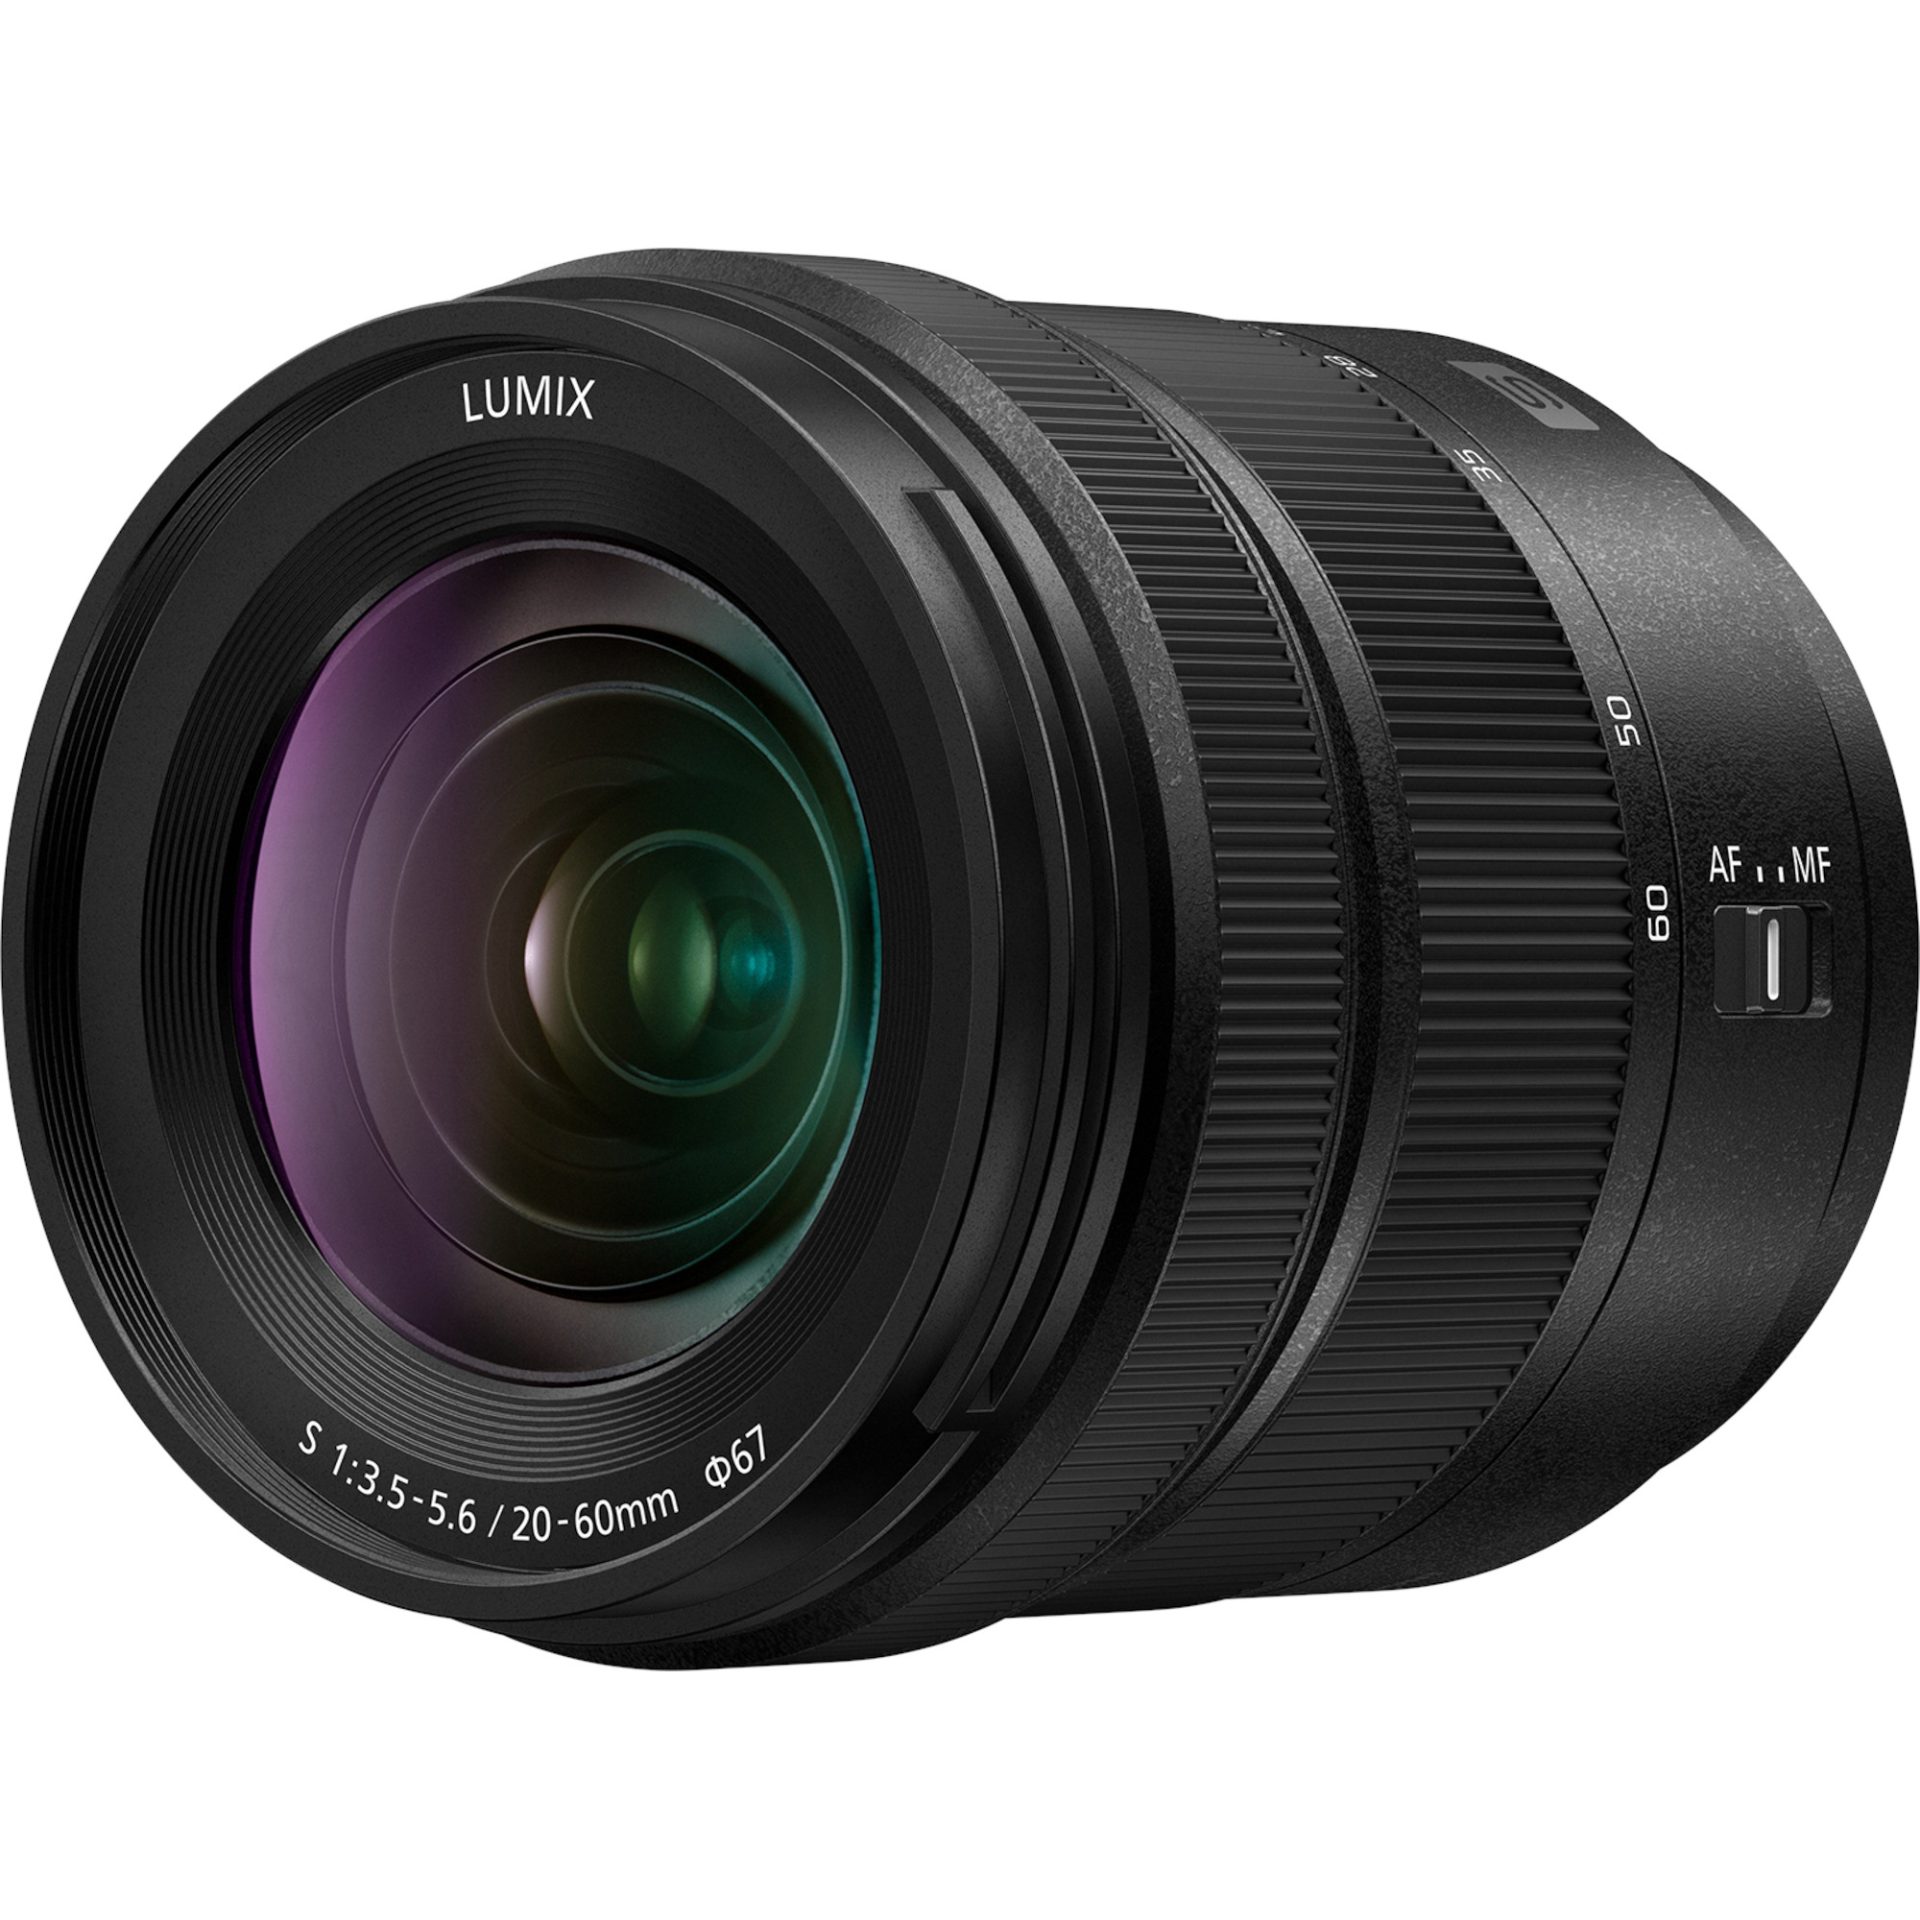 Panasonic S-R2060 zoom teleobjektiv (20-60mm, F3.5-5.6, filtr 67mm, full frame FF, zvětšení 0.43x, odolný proti prachu a stříkající vodě), černý